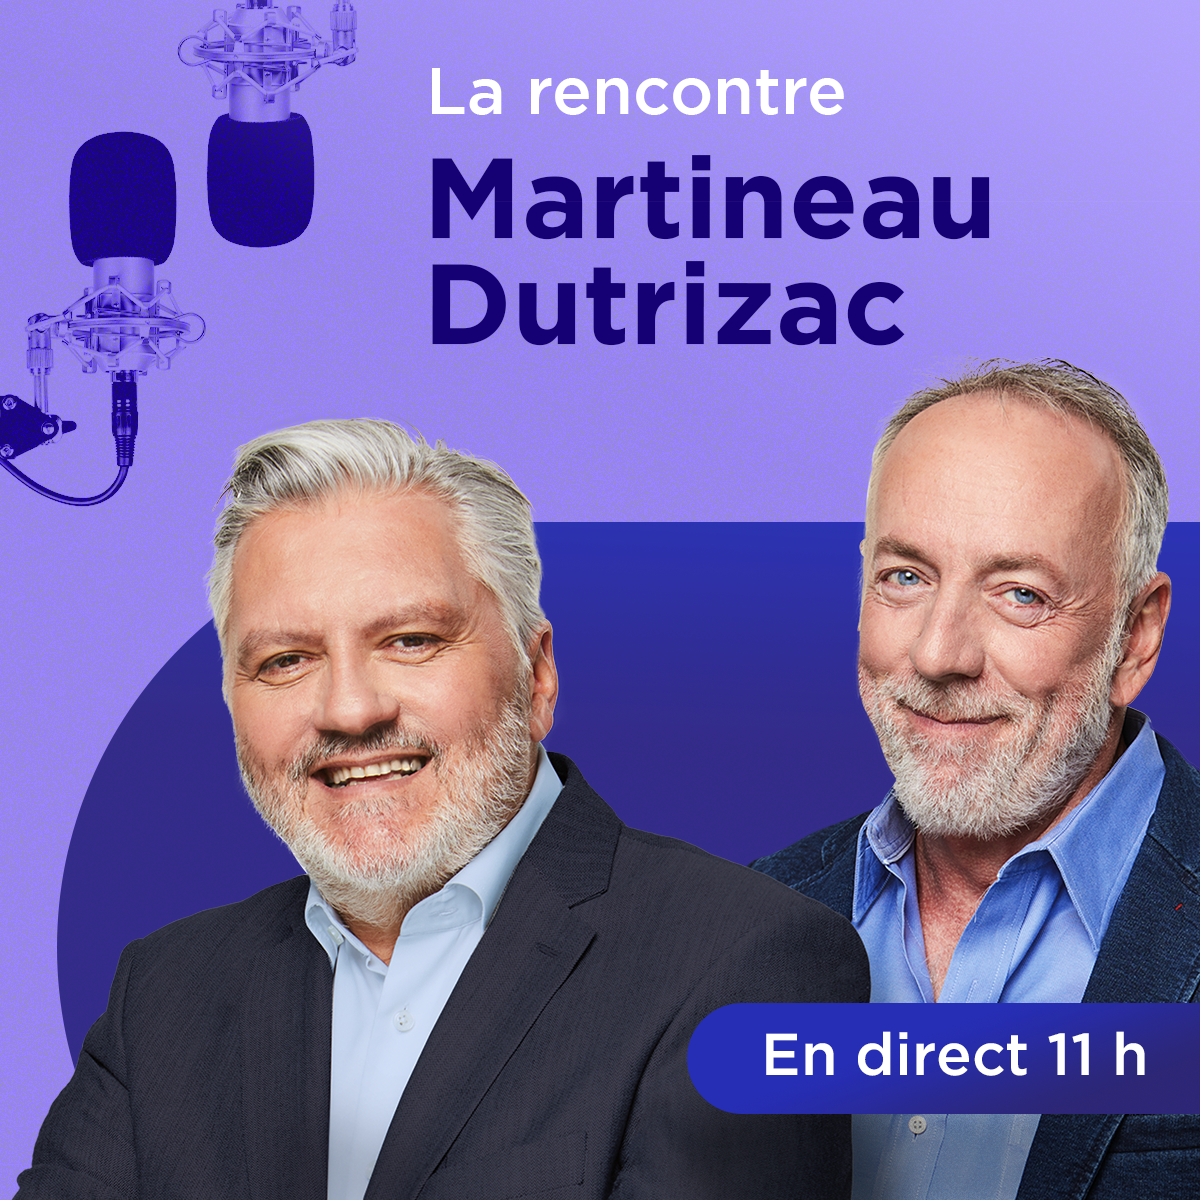 Les francophones méritent des coups de pied au cul, dit Martineau